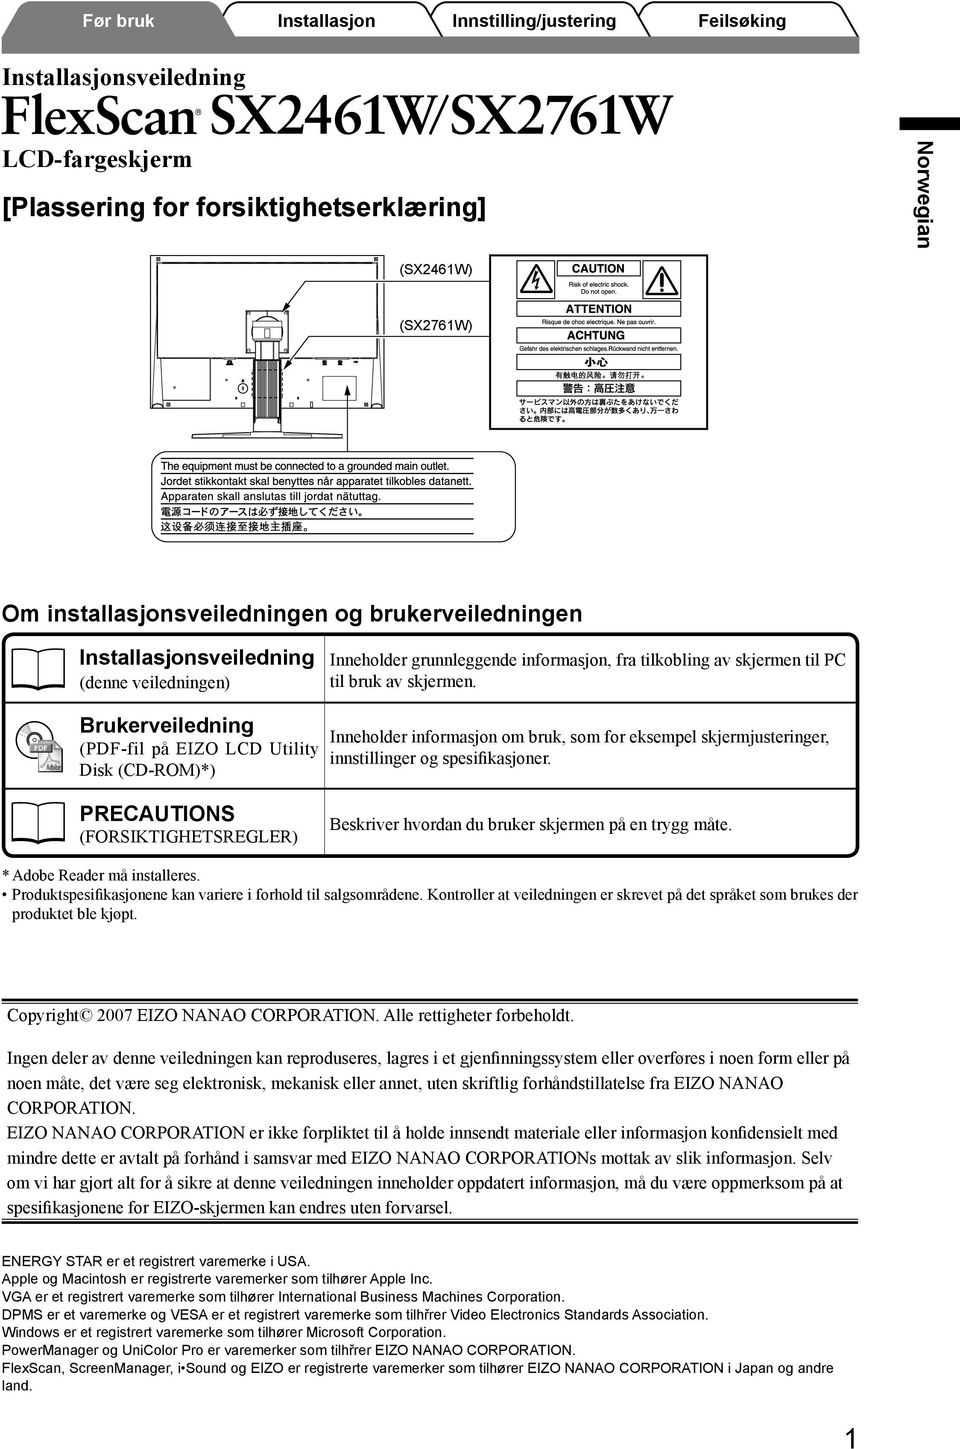 Brukerveiledning (PDF-fil på EIZO LCD Utility Disk (CD-ROM)*) Inneholder informasjon om bruk, som for eksempel skjermjusteringer, innstillinger og spesifikasjoner.